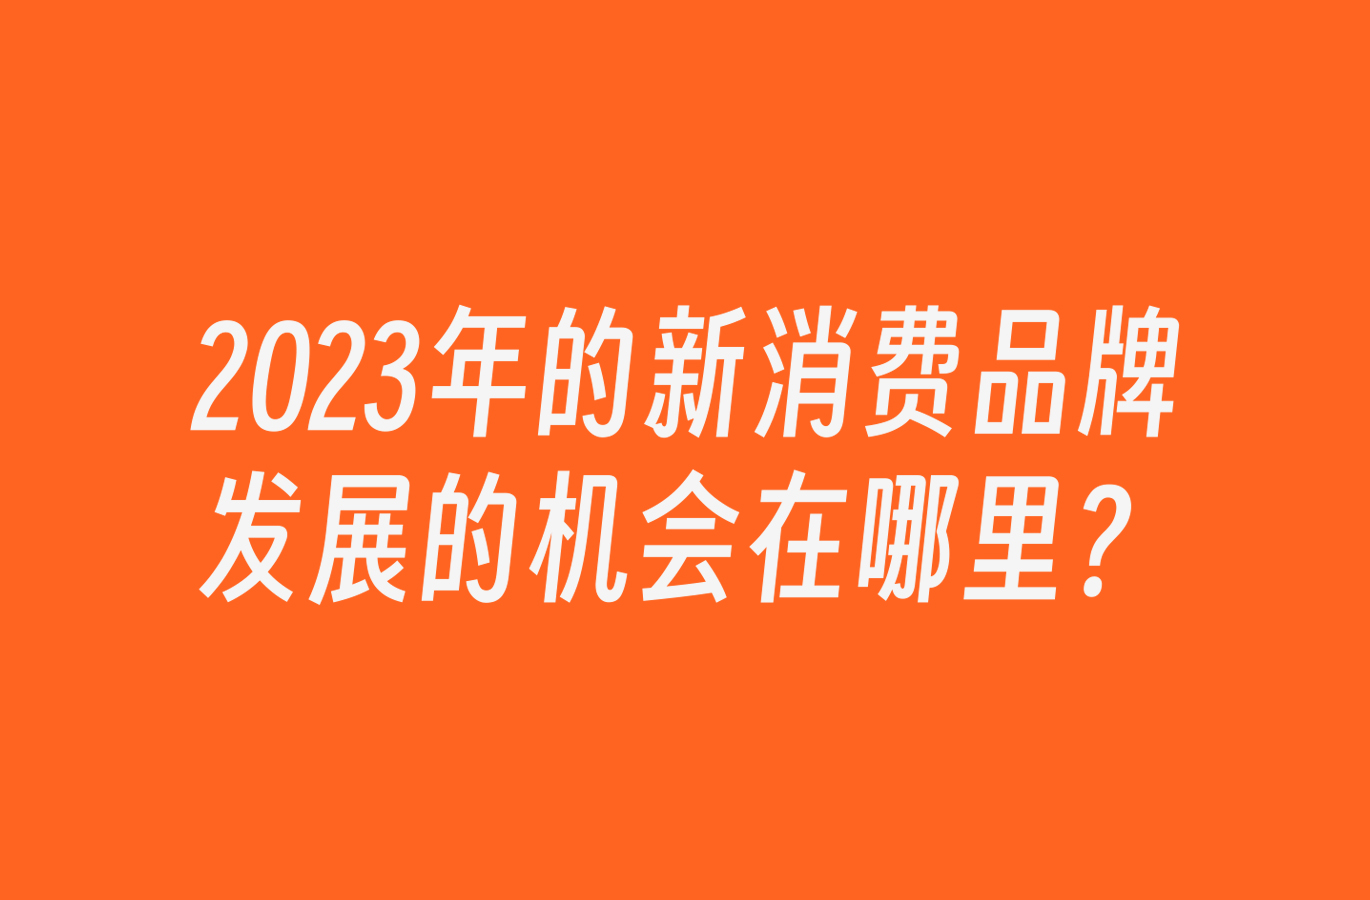 2023年的新消费品牌发展的机会在哪里？-深圳VI设计